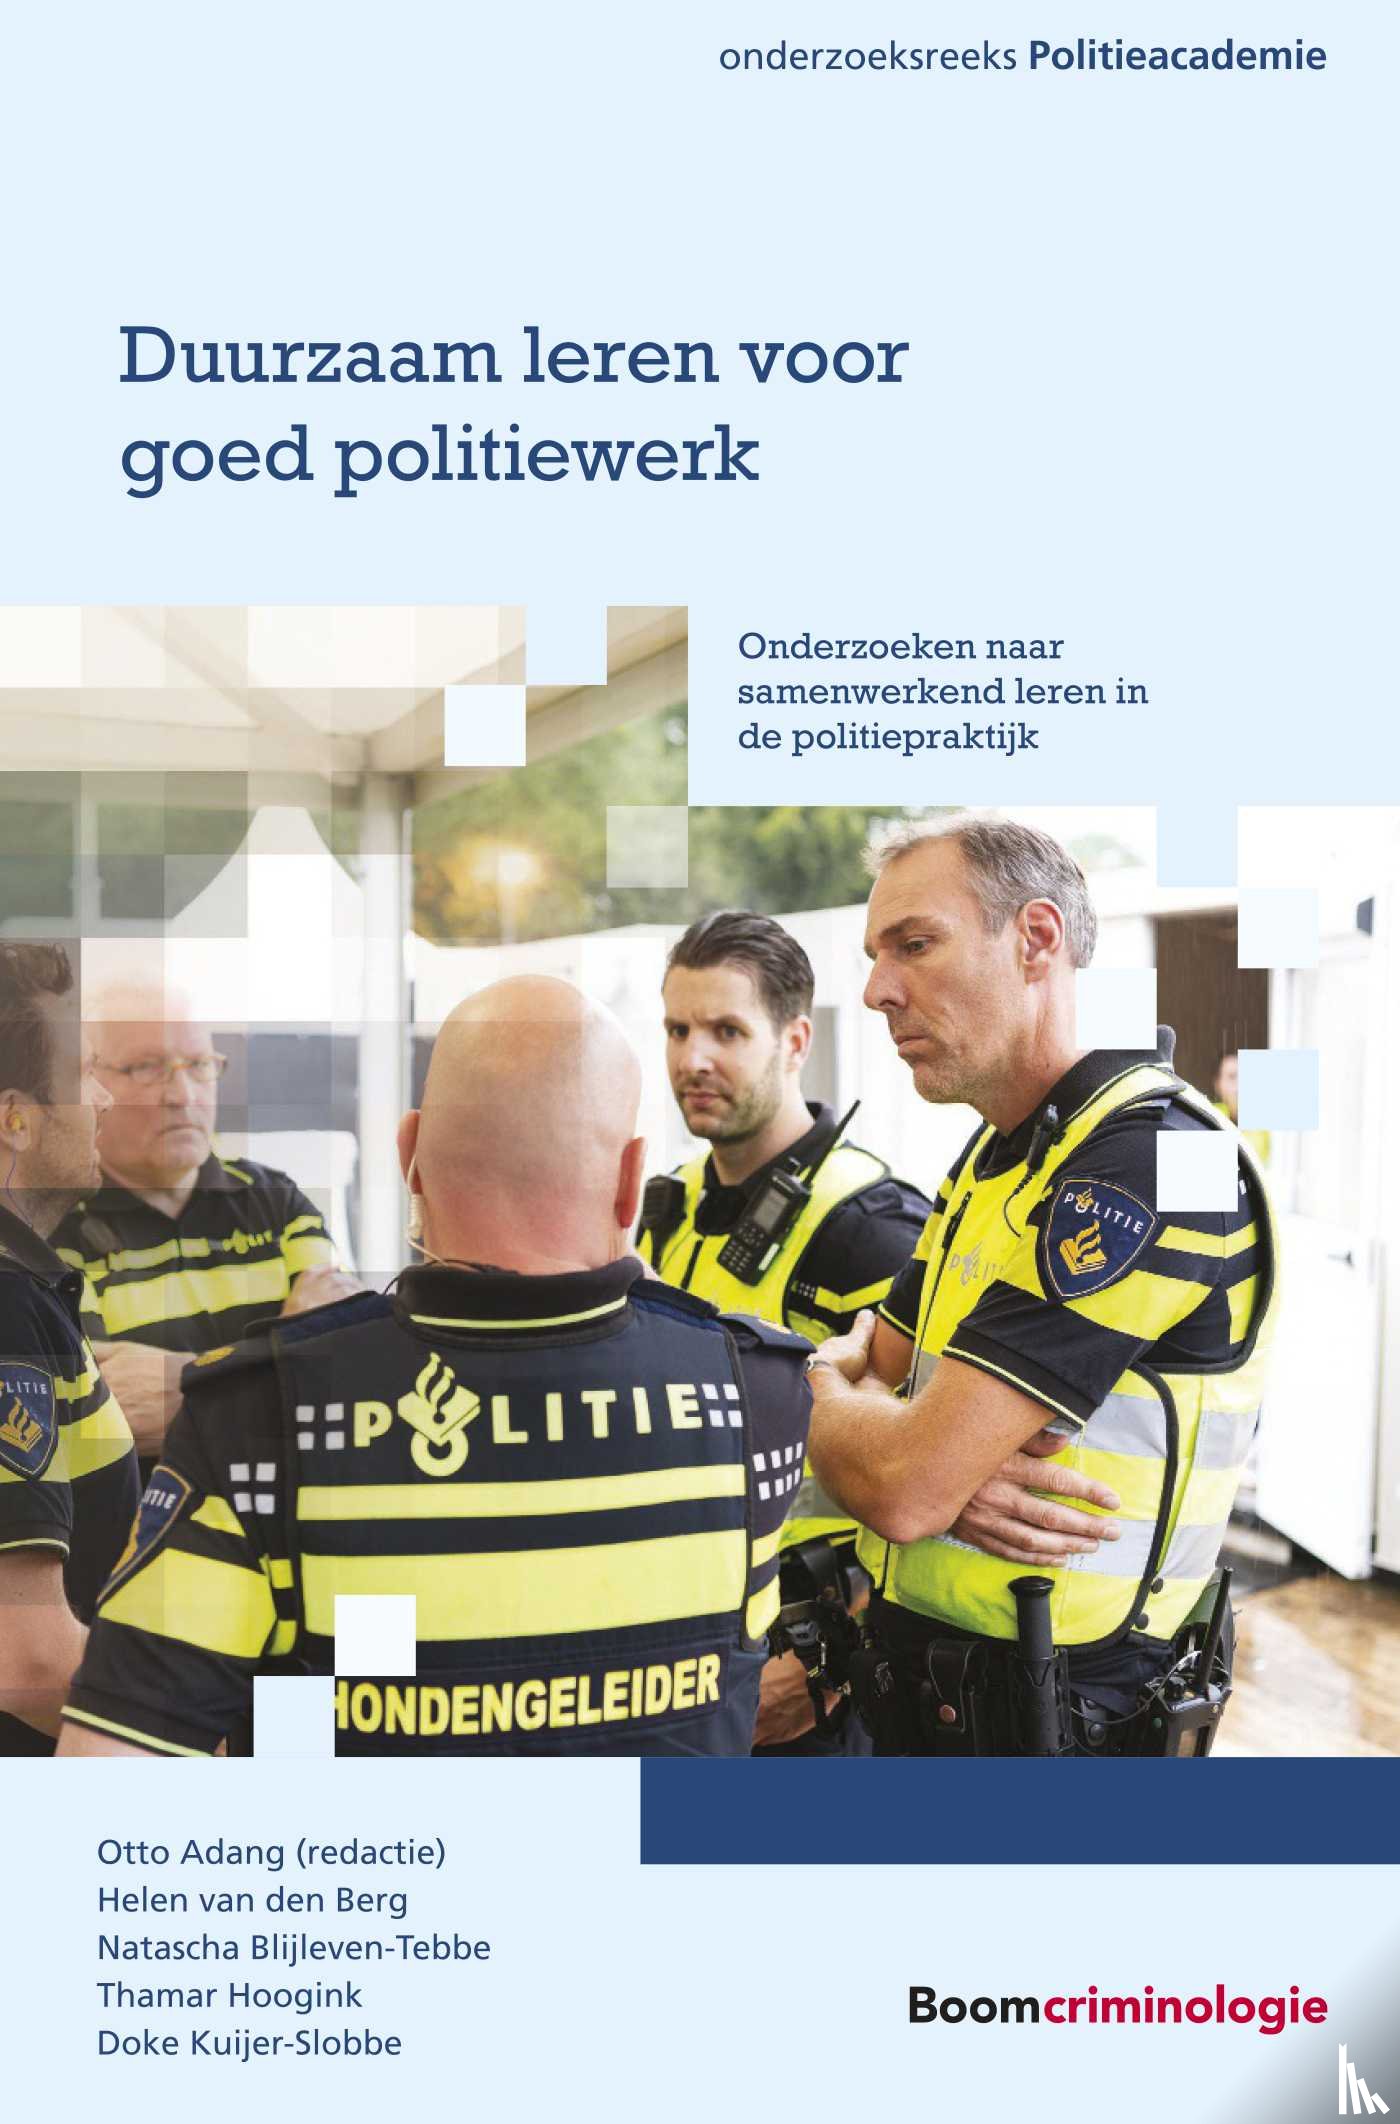 Berg, Helen van den, Blijleven-Tebbe, Natascha, Hoogink, Thamar, Kuijer-Slobbe, Doke - Duurzaam leren voor goed politiewerk